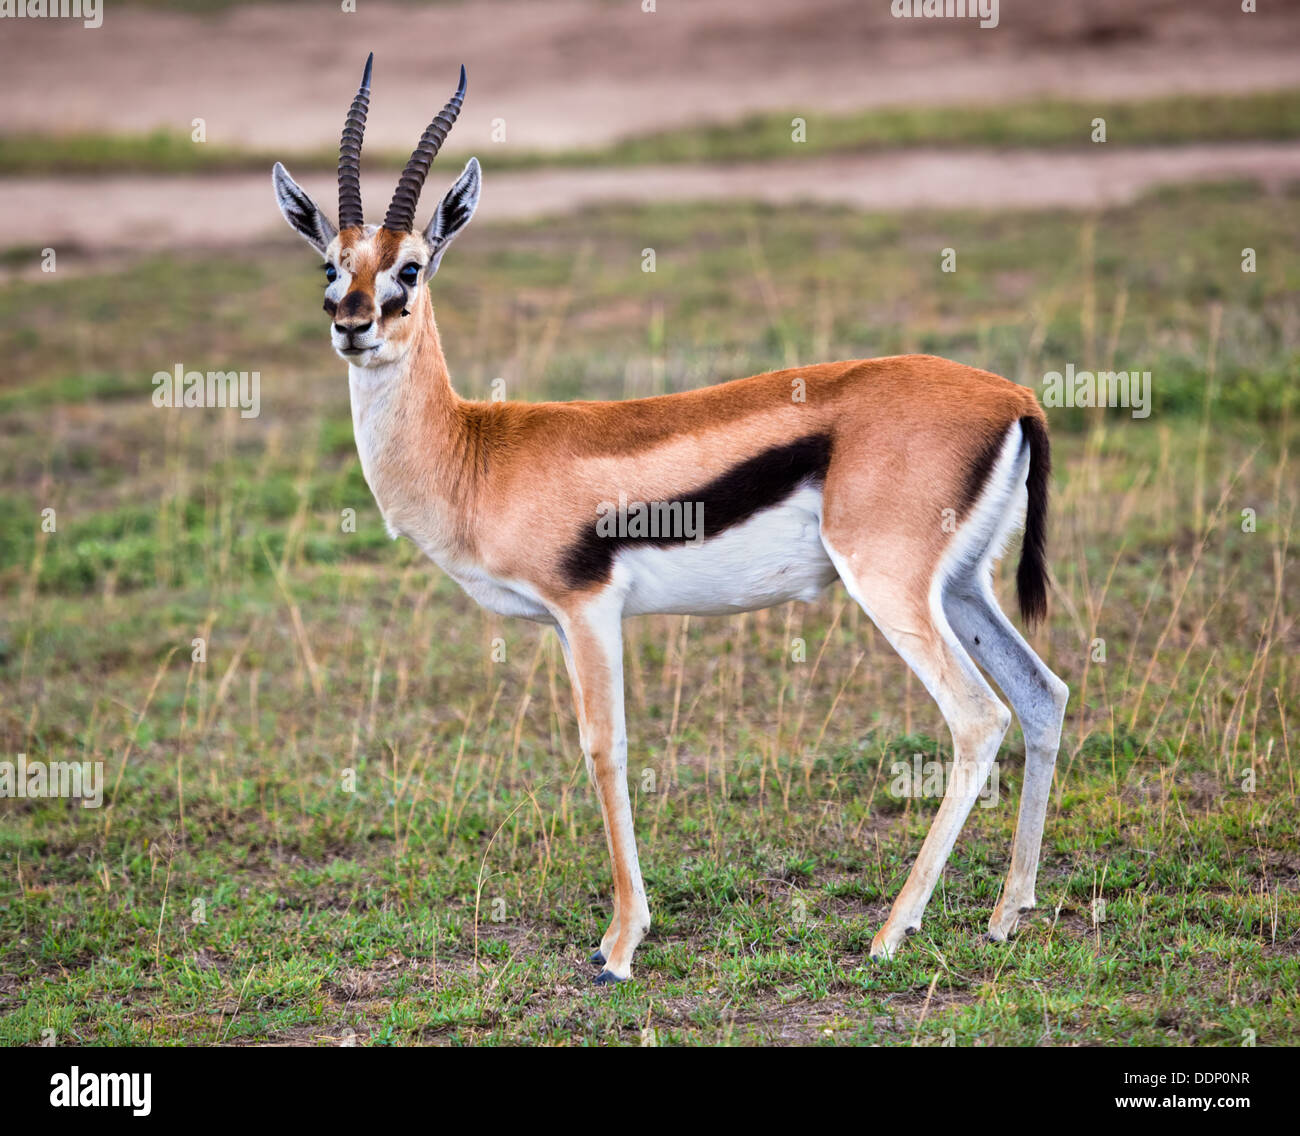 Thomson's gazelle (Eudorcas thomsonii) in the Serengeti, Tanzania, Africa Stock Photo